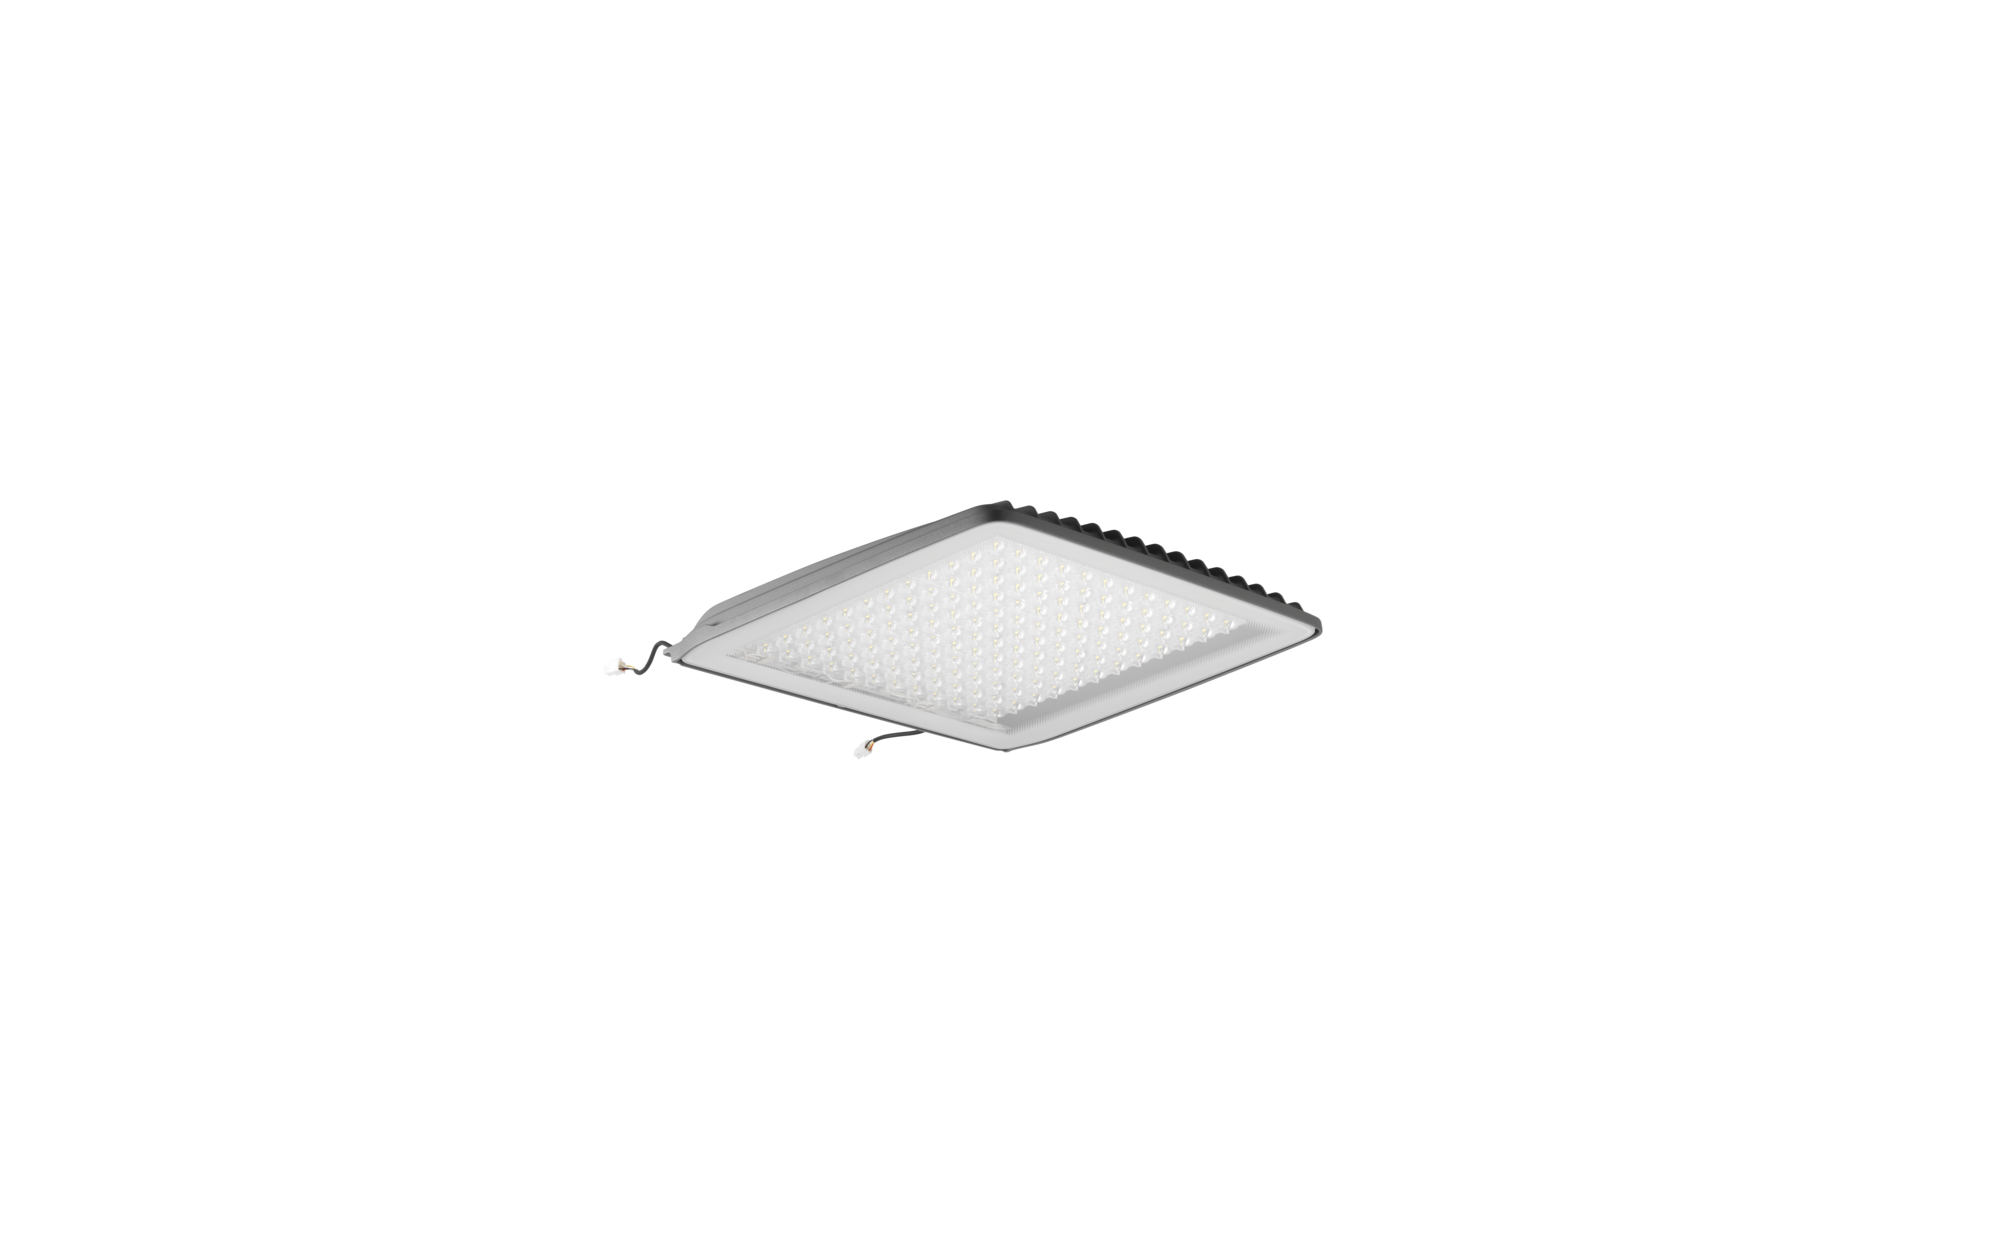 LED-Laufschrift FY7S-256-16-RGB7C-OG - WeTelCo. GmbH